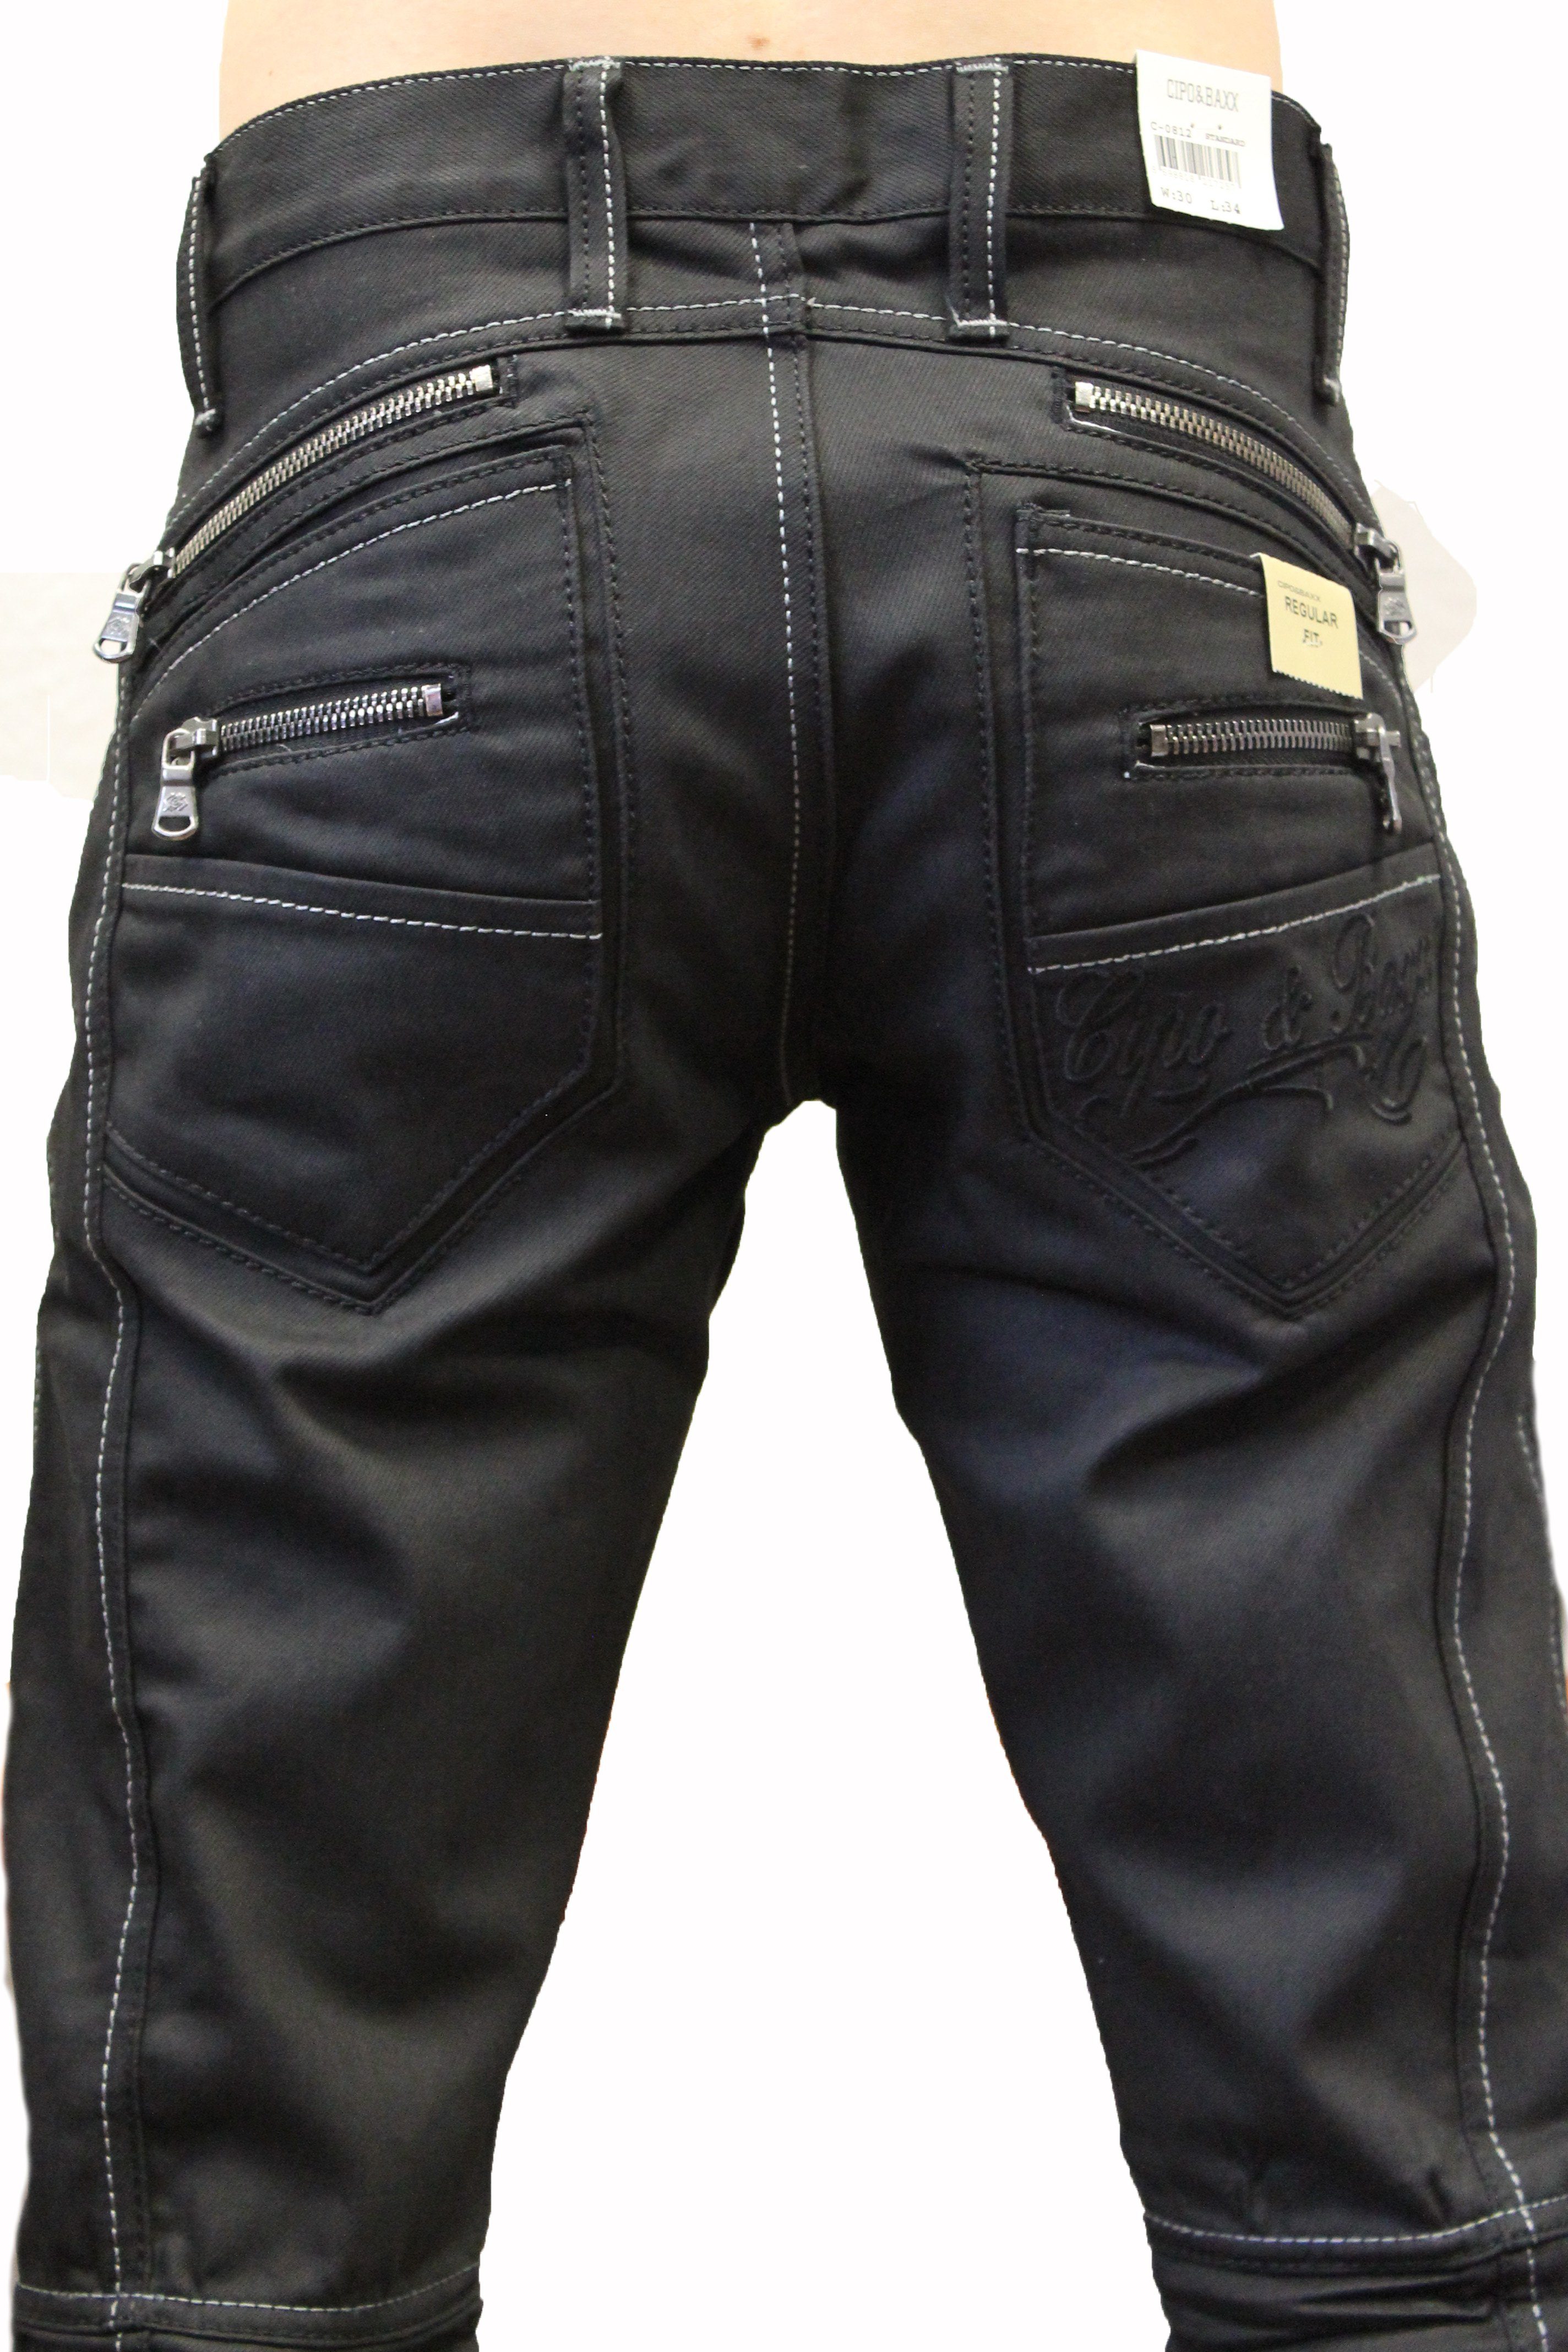 Weiße und stylische und Hose gewachster mit Kontrastnähte Regular-fit-Jeans Herren Cipo & ausgefallenem Design Jeans Waschung Zipper Baxx